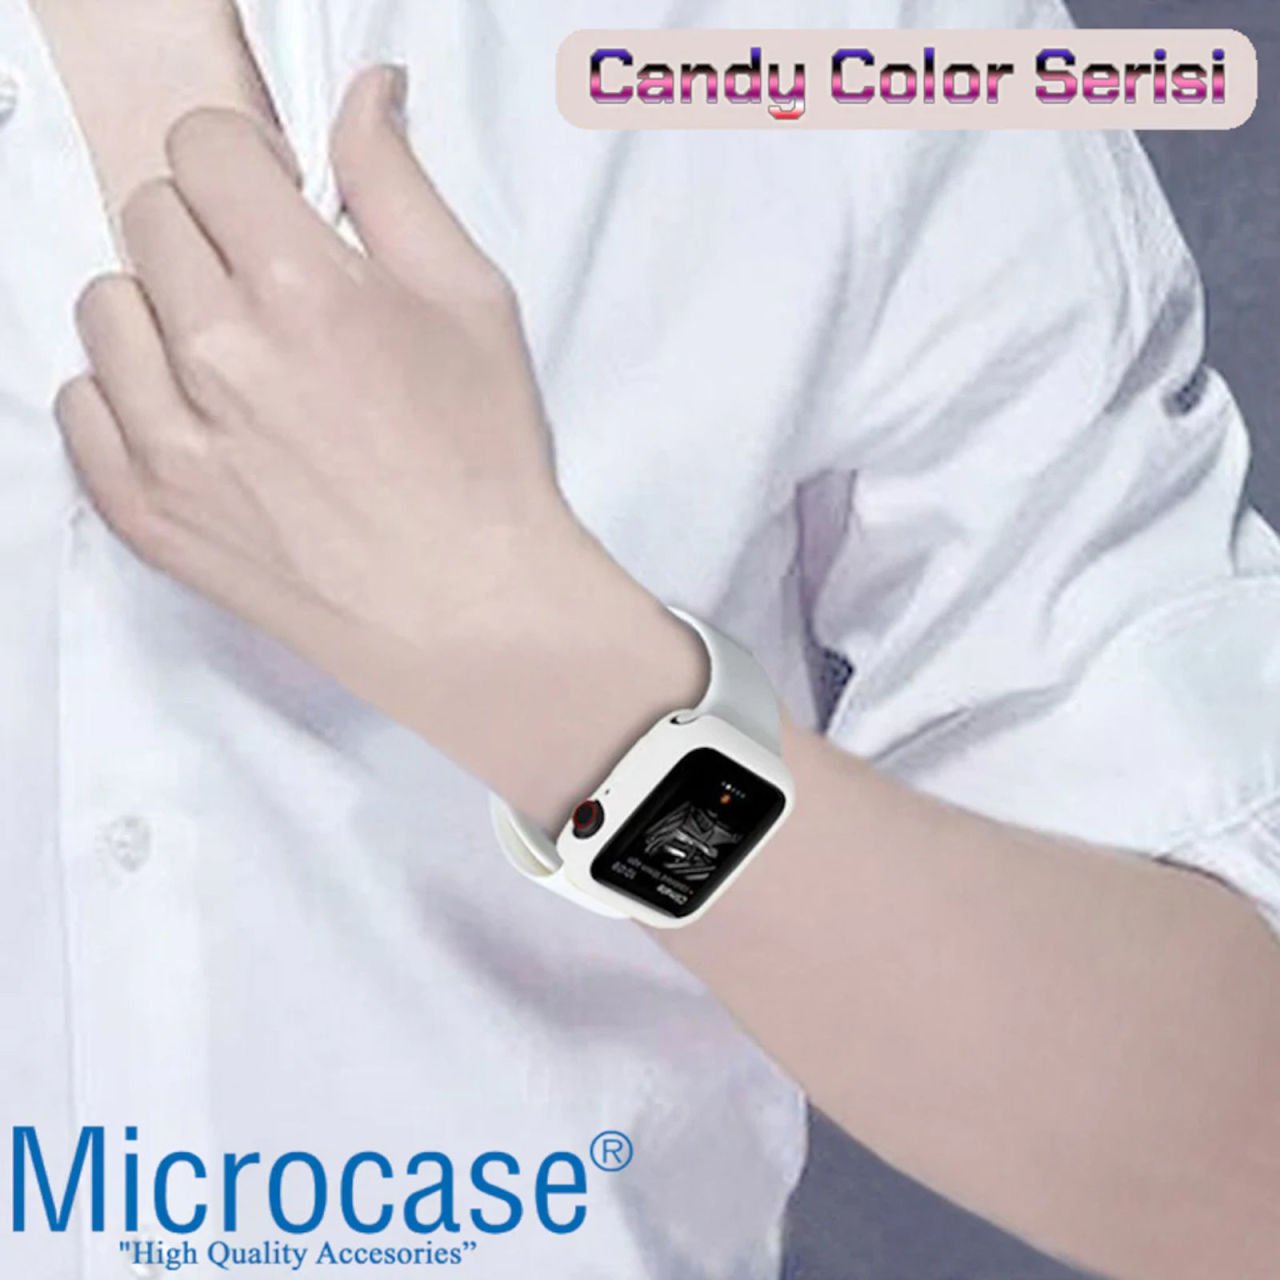 Microcase Apple Watch Seri 6 44mm Candy Color Seri Kılıf Beyaz MC1403